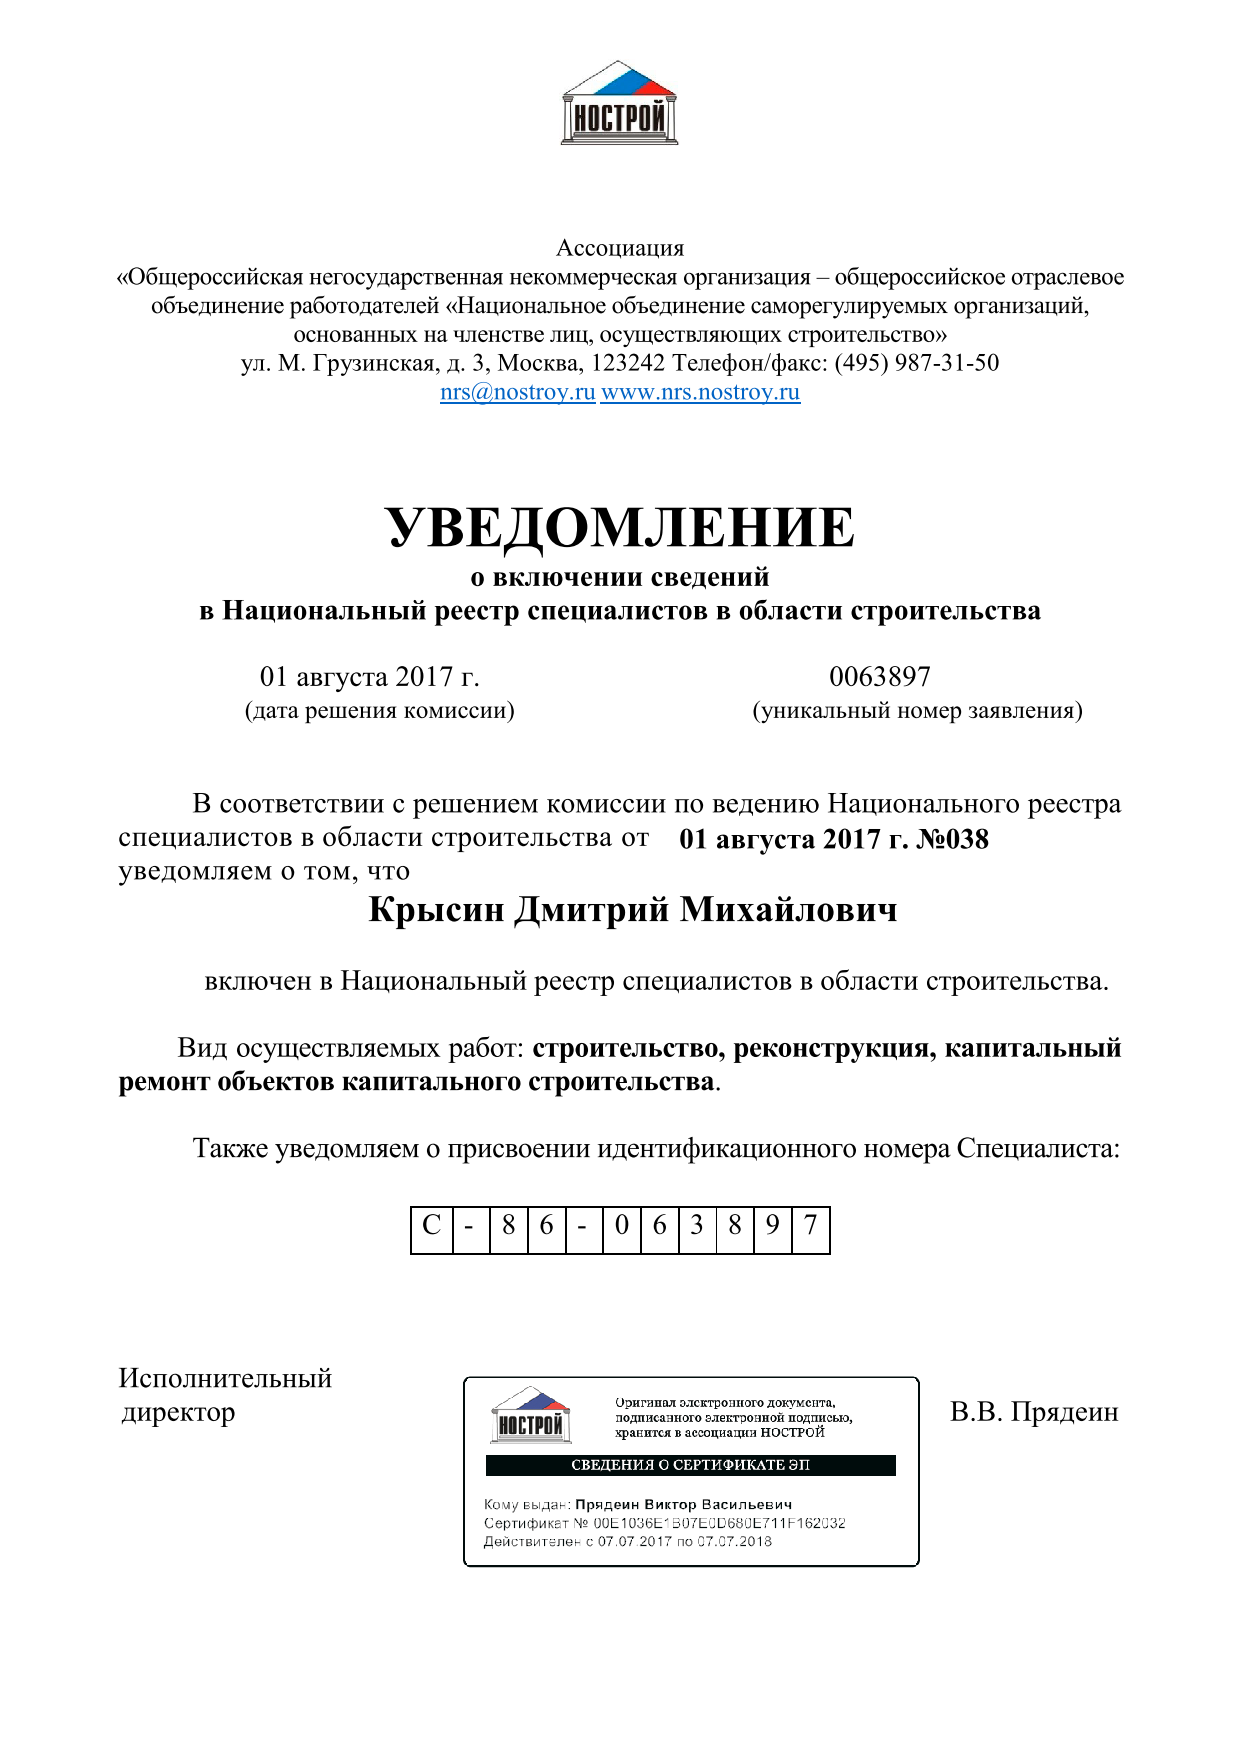 Уведомление о включении сведений в Национальный реестр специалистов в области строительства Крысина Дмитрия Михайловича